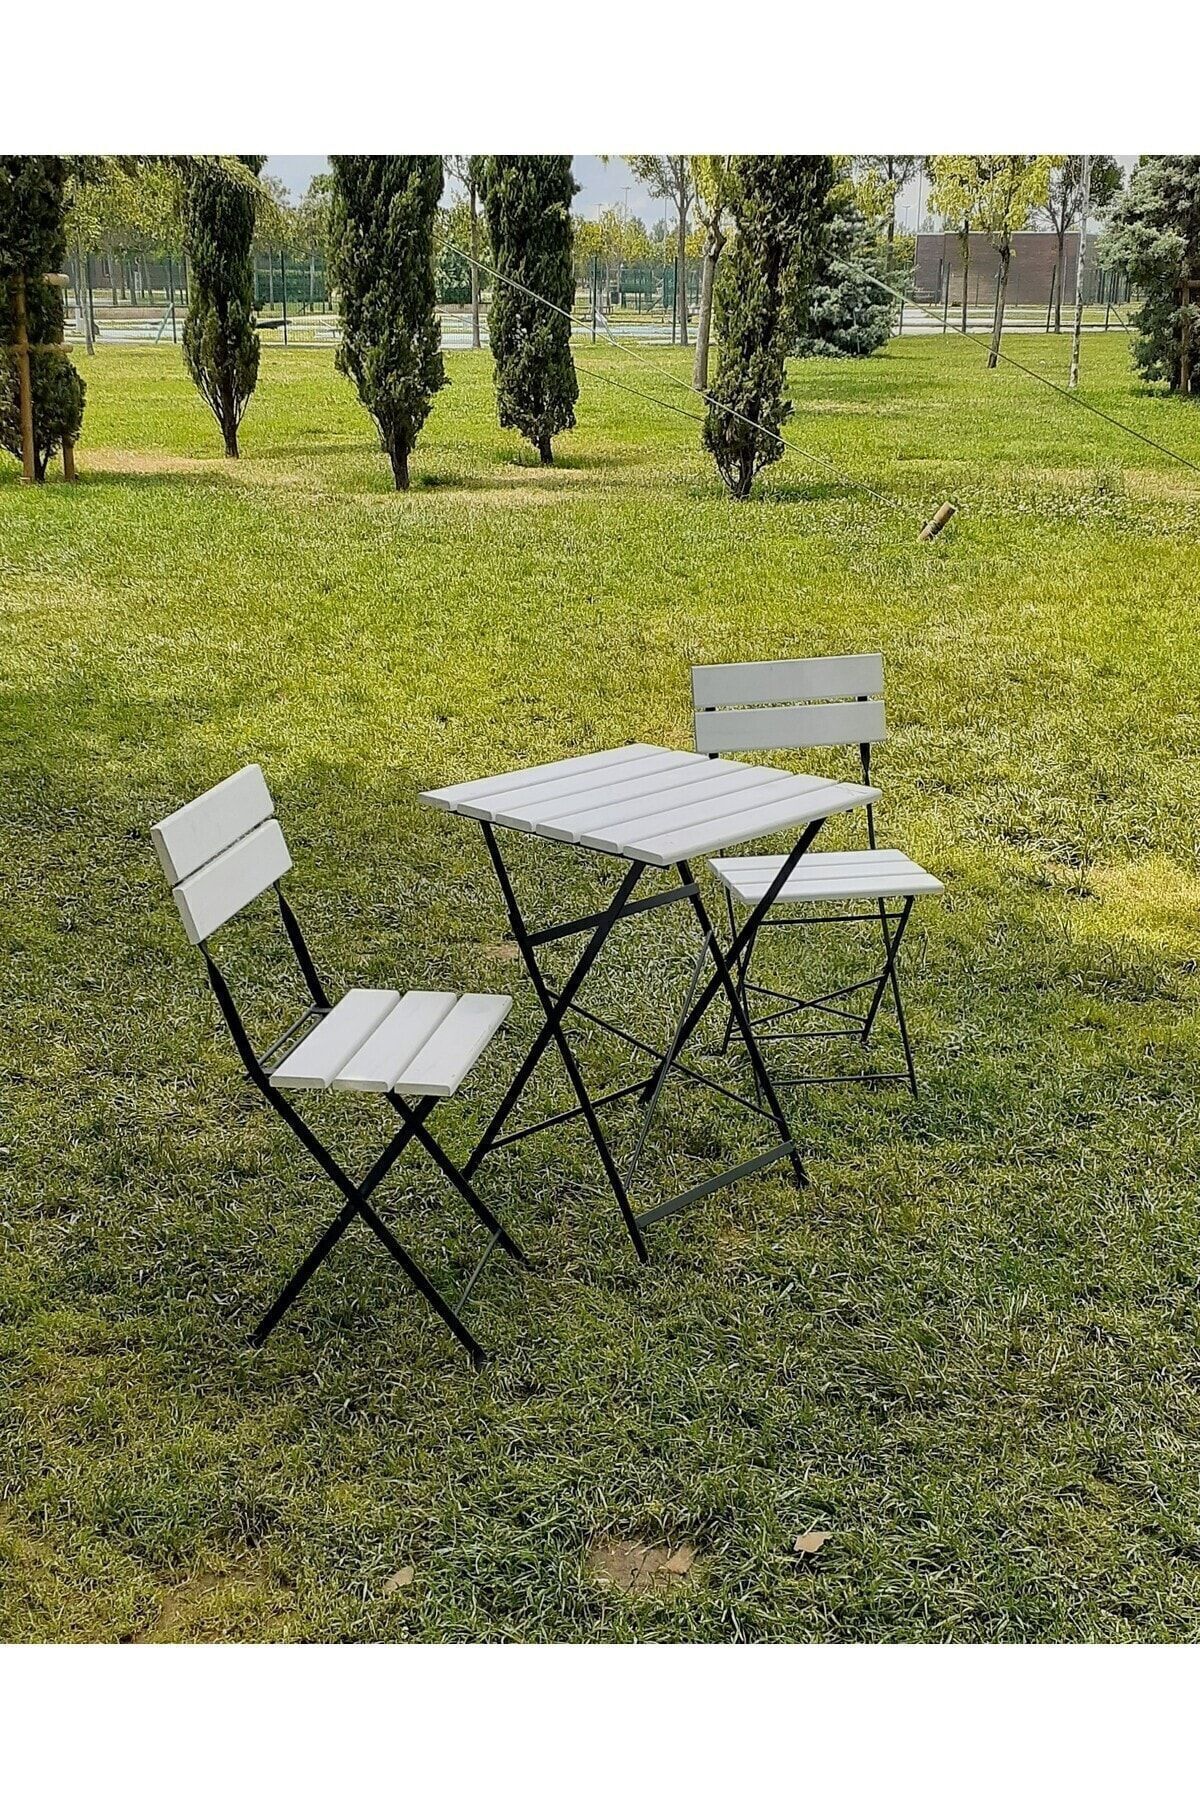 Zemes Design Beyaz Katlanır Masa Sandalye Kamp Bahçe Balkon Mutfak Takımı 2 Sandalye 1 Masa Bistro (Verniklidir)